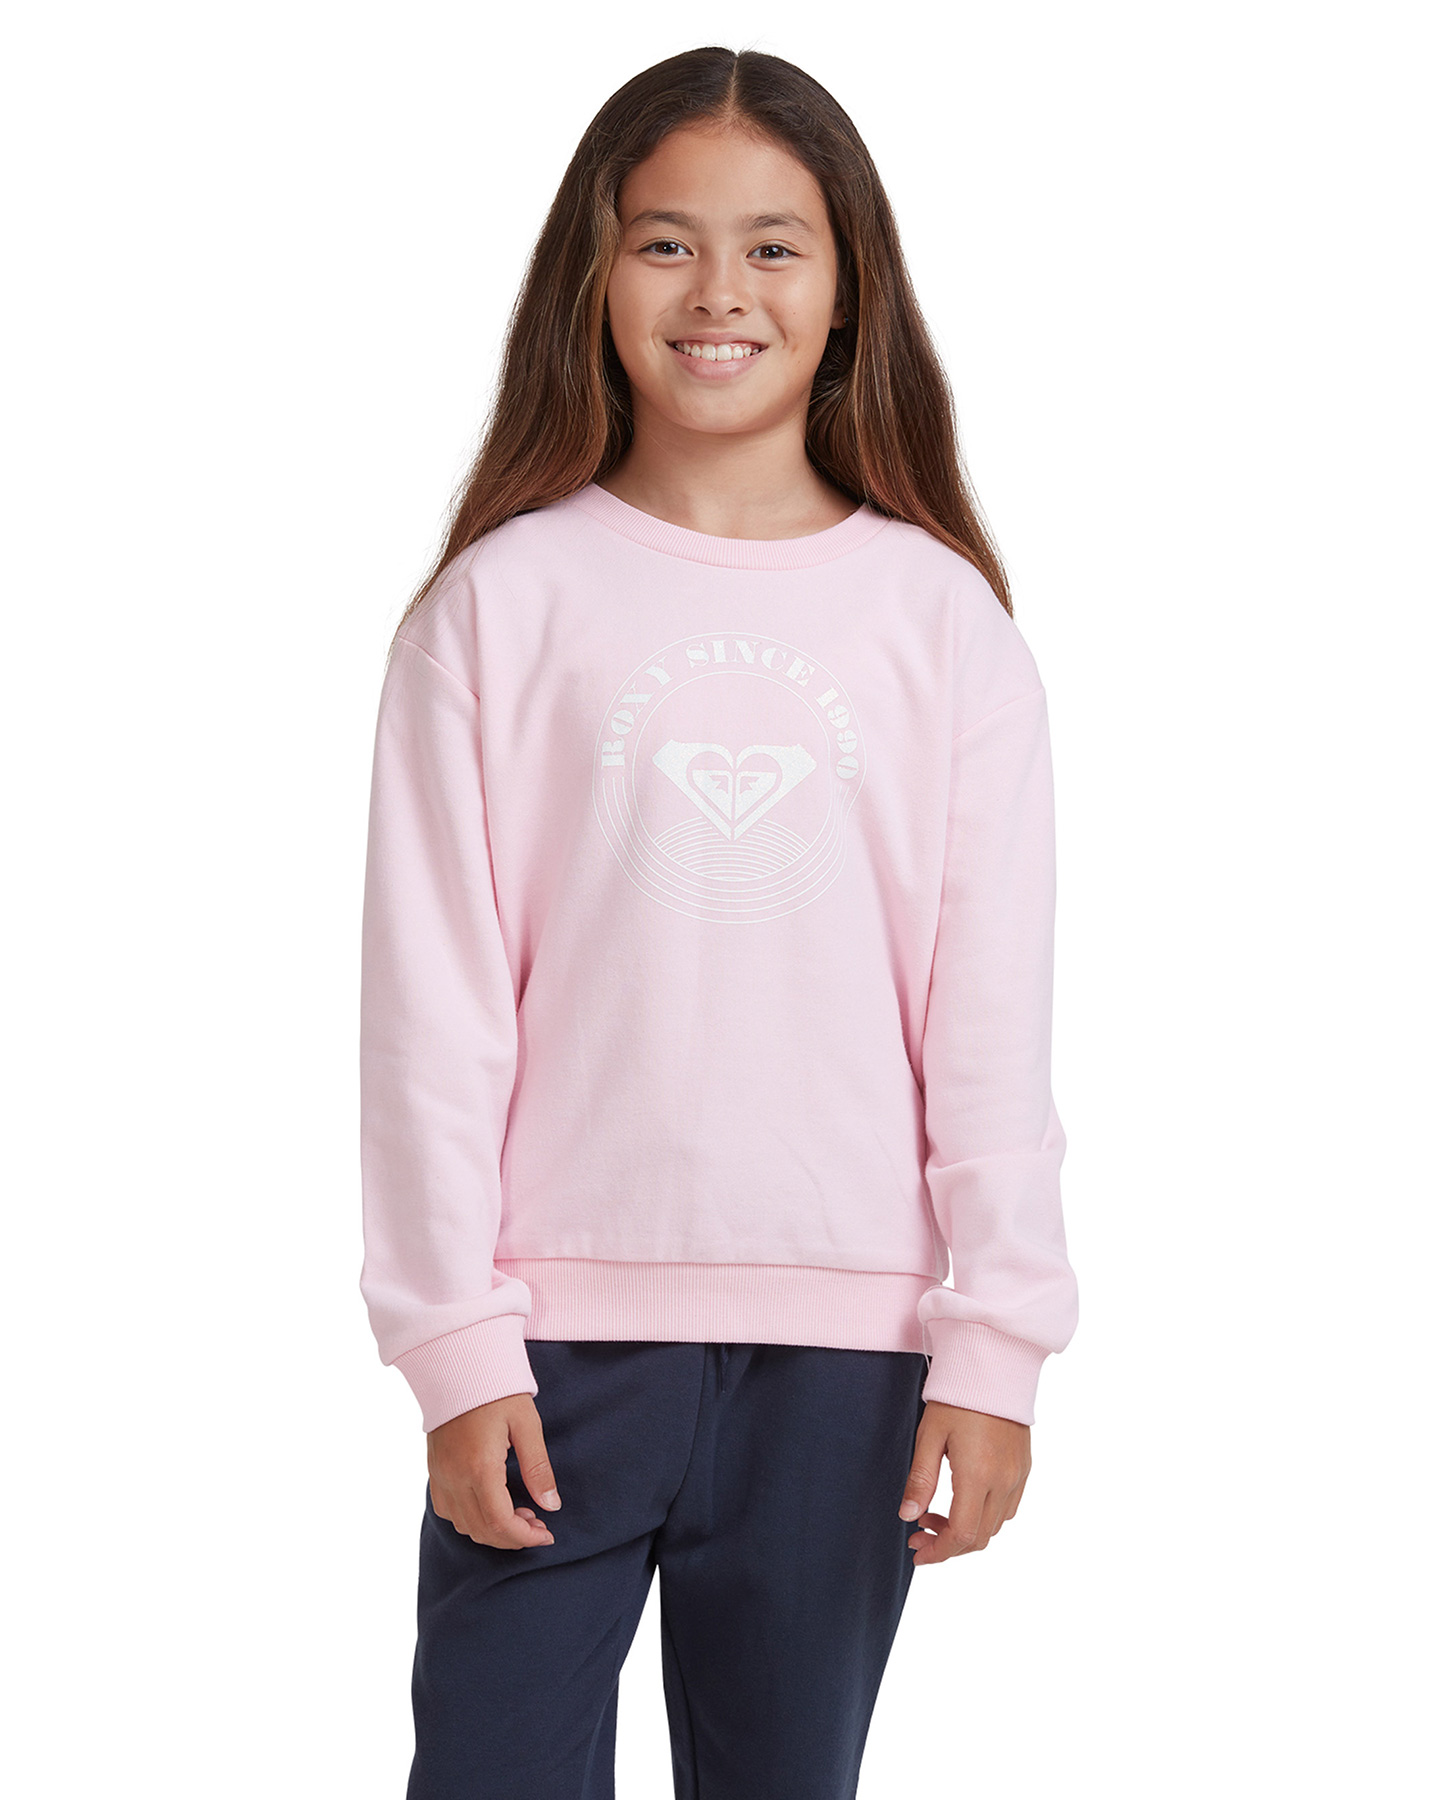 Roxy Girls 4-14 Spring Day Organic Sweatshirt - Pink Mist I | SurfStitch